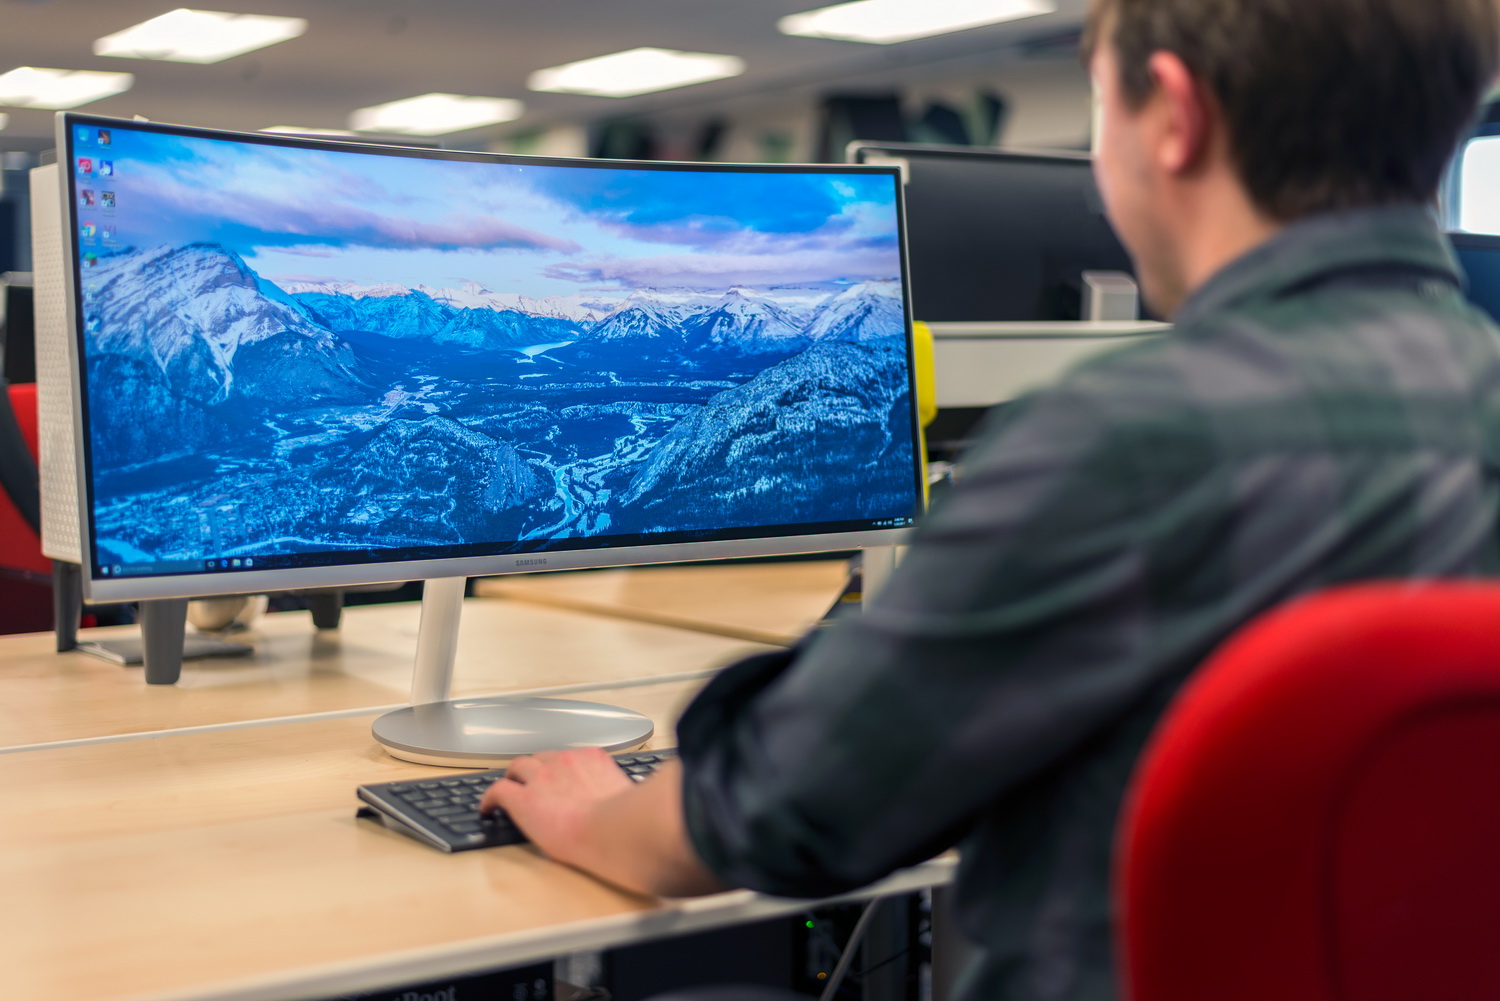 ▷ El mejor monitor para tu mac【Review Samsung Ultrawide C34J791】